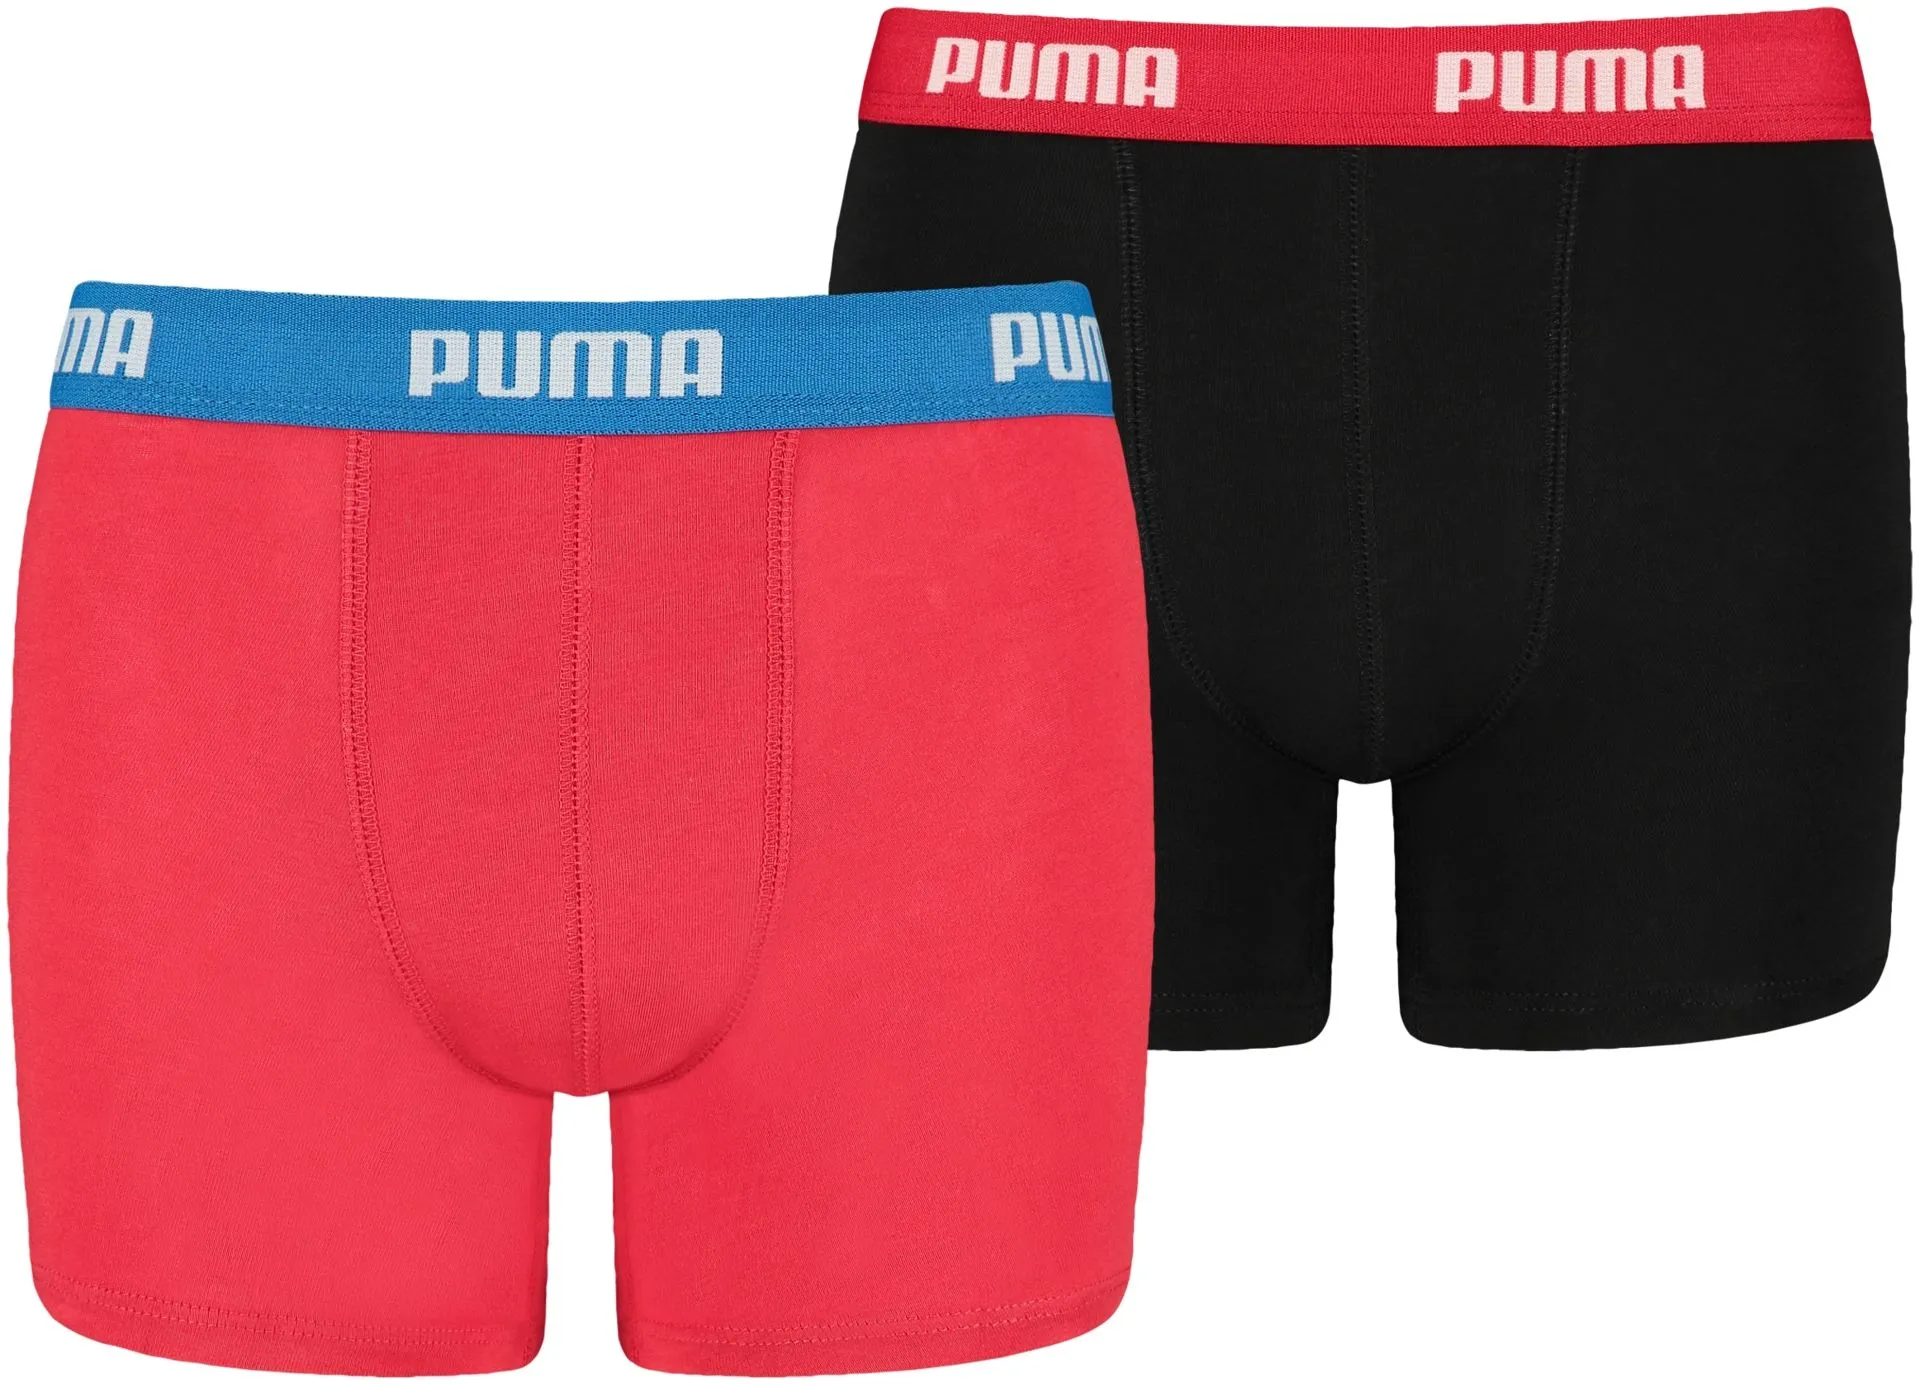 Puma lasten bokserit Basic 2-pack - Red/black - 1